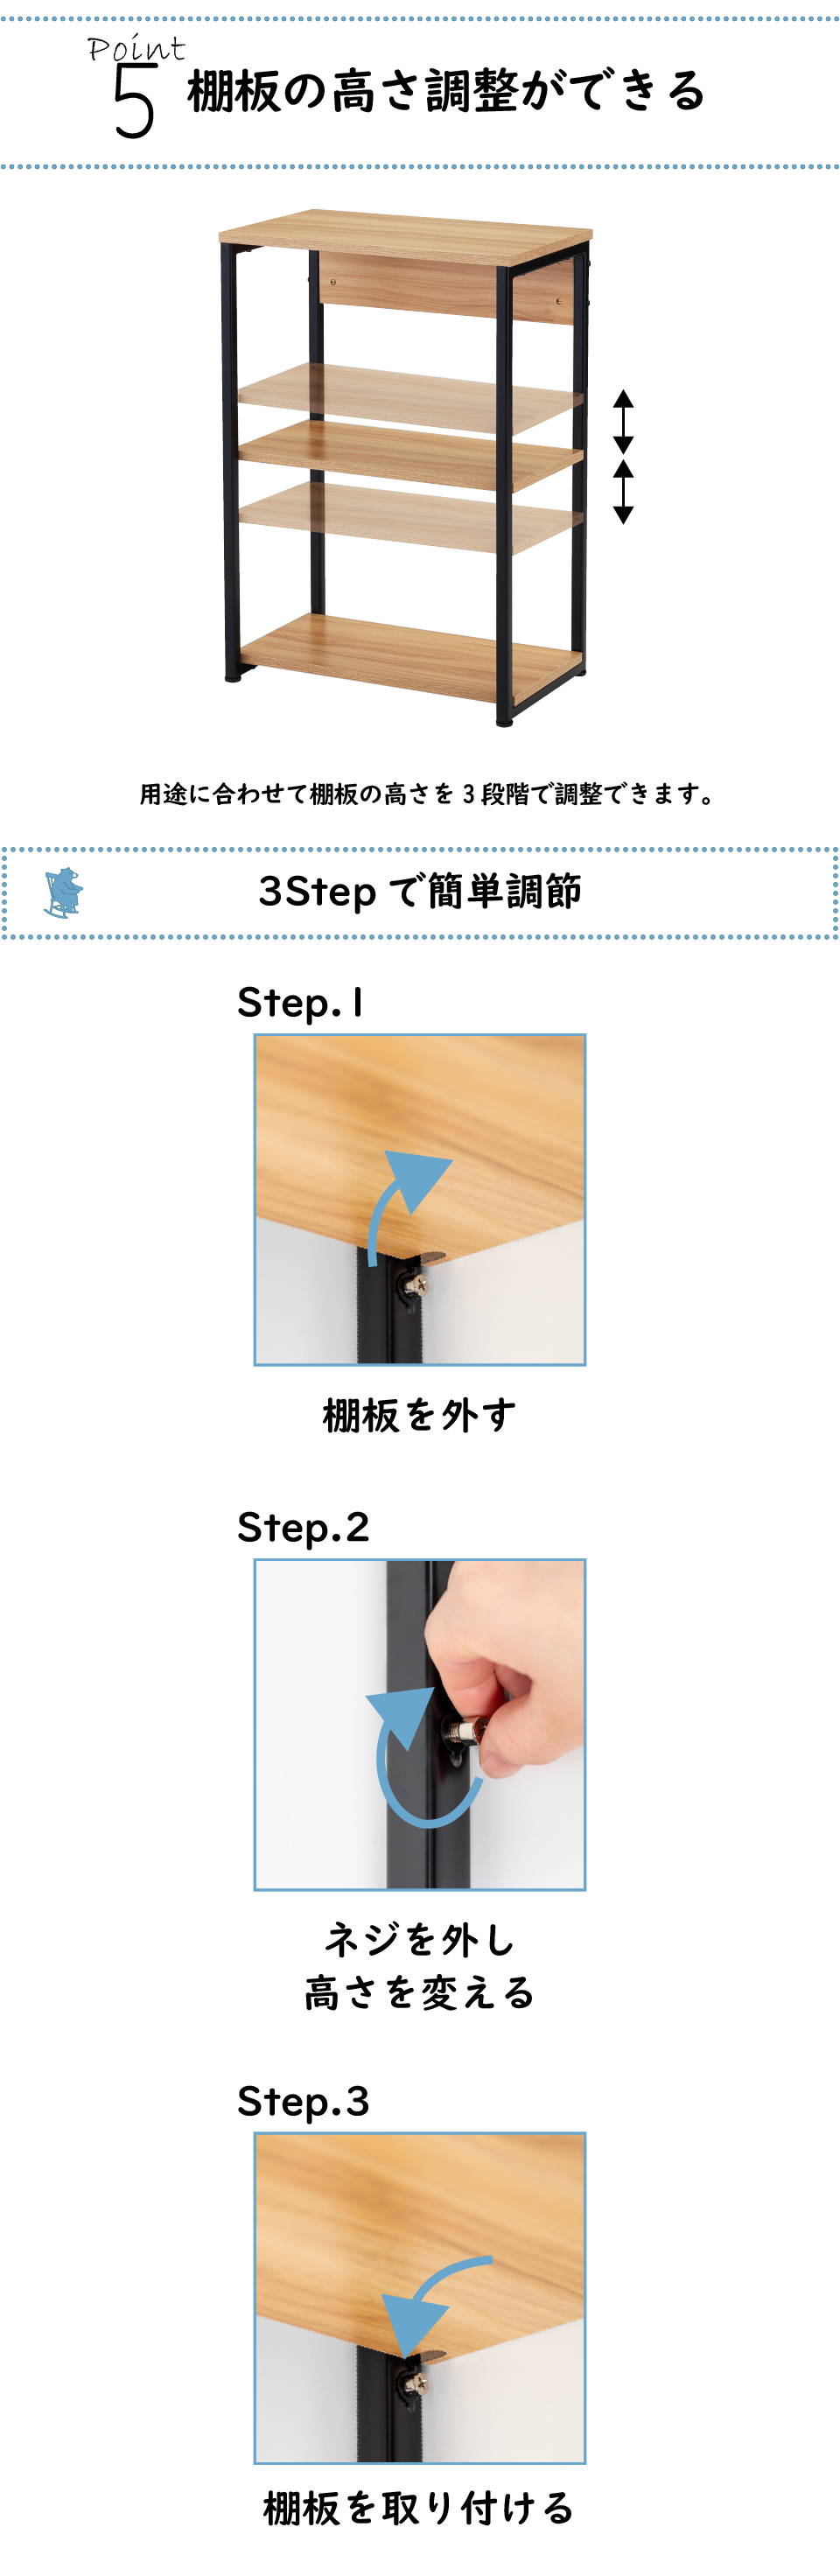 簡単に棚板調整ができる 3段階調整